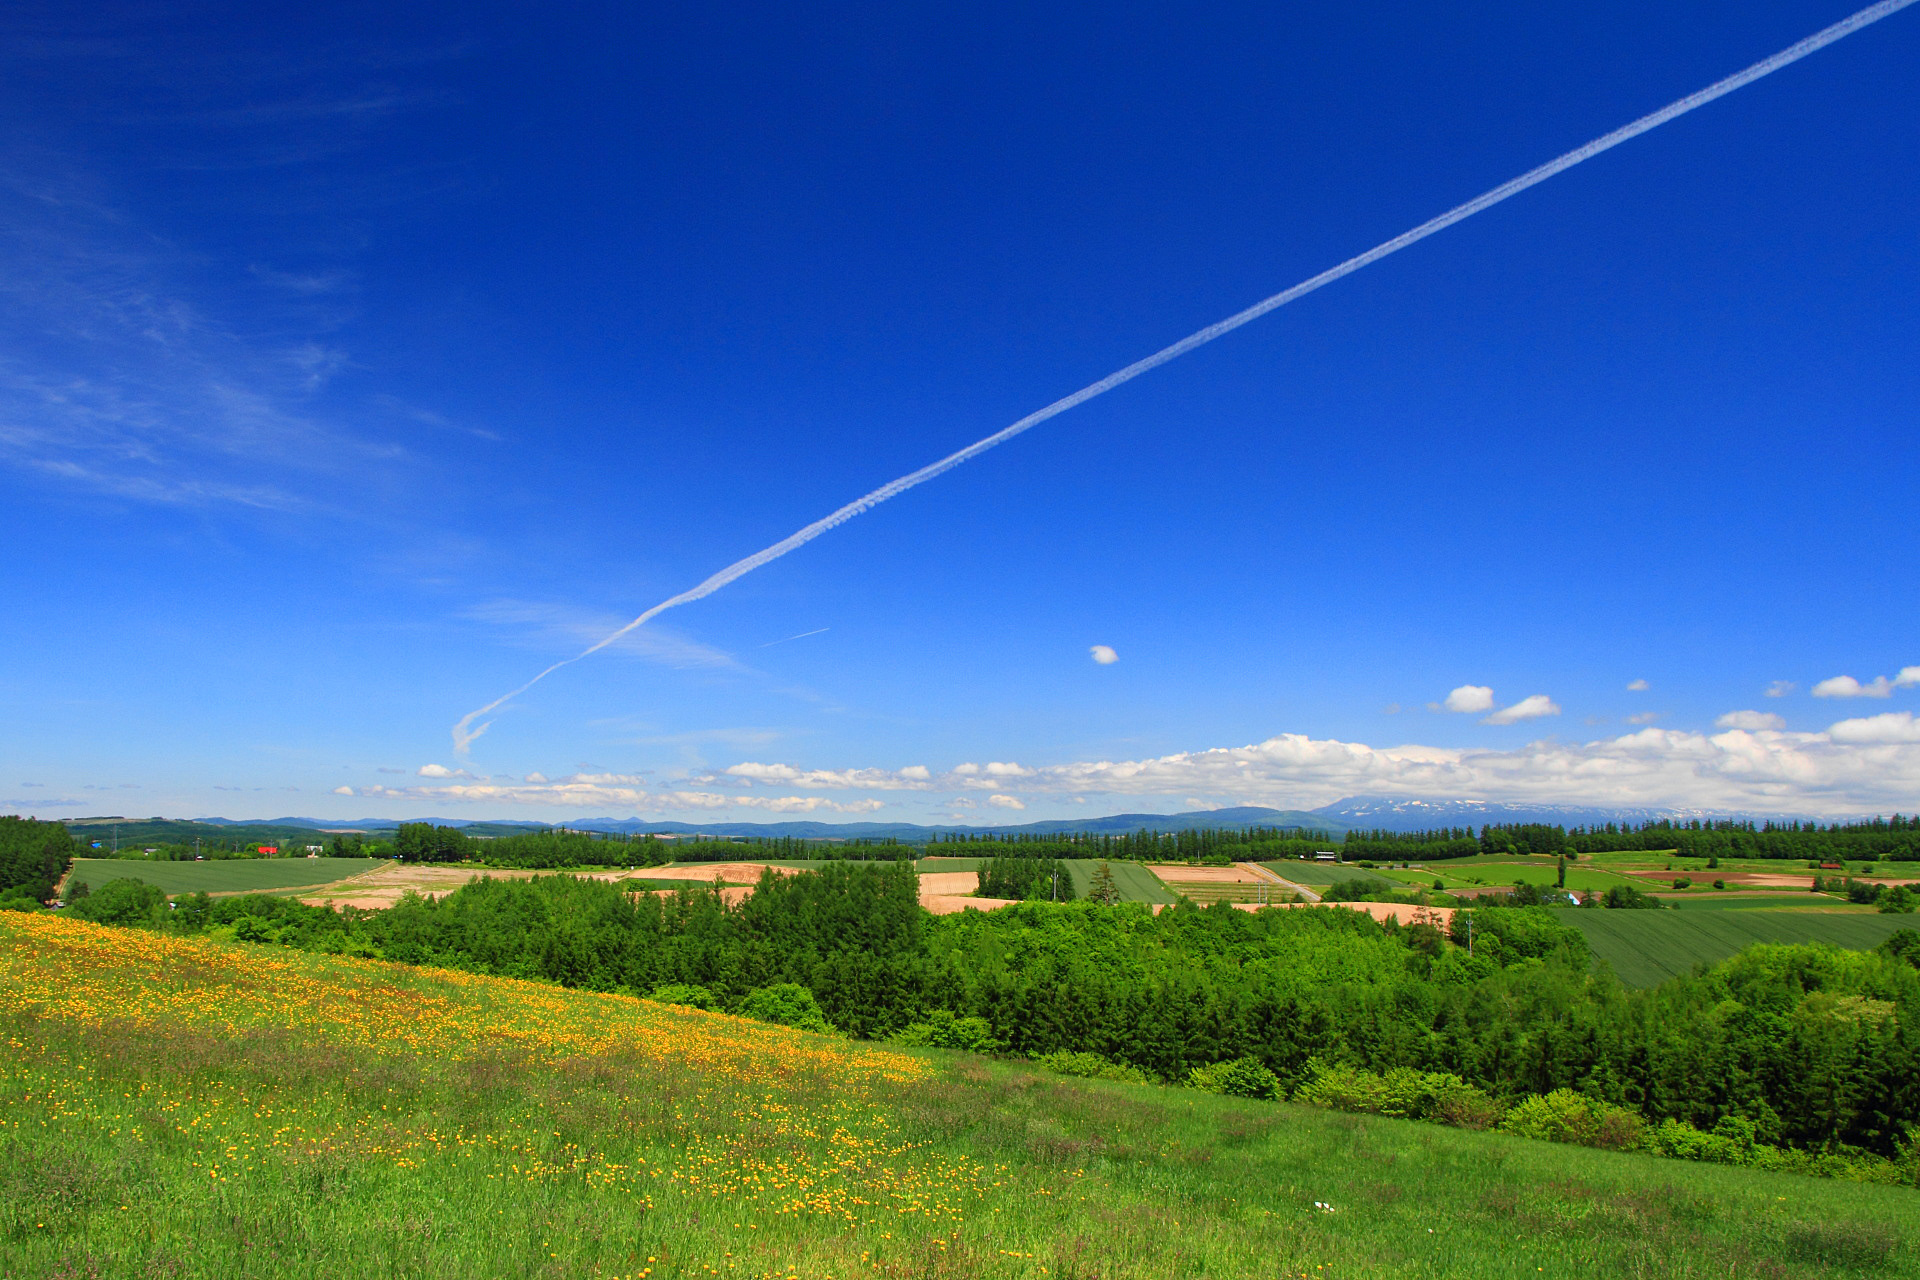 日本の風景 美瑛の初夏26 夏空の飛行機雲 壁紙19x1280 壁紙館